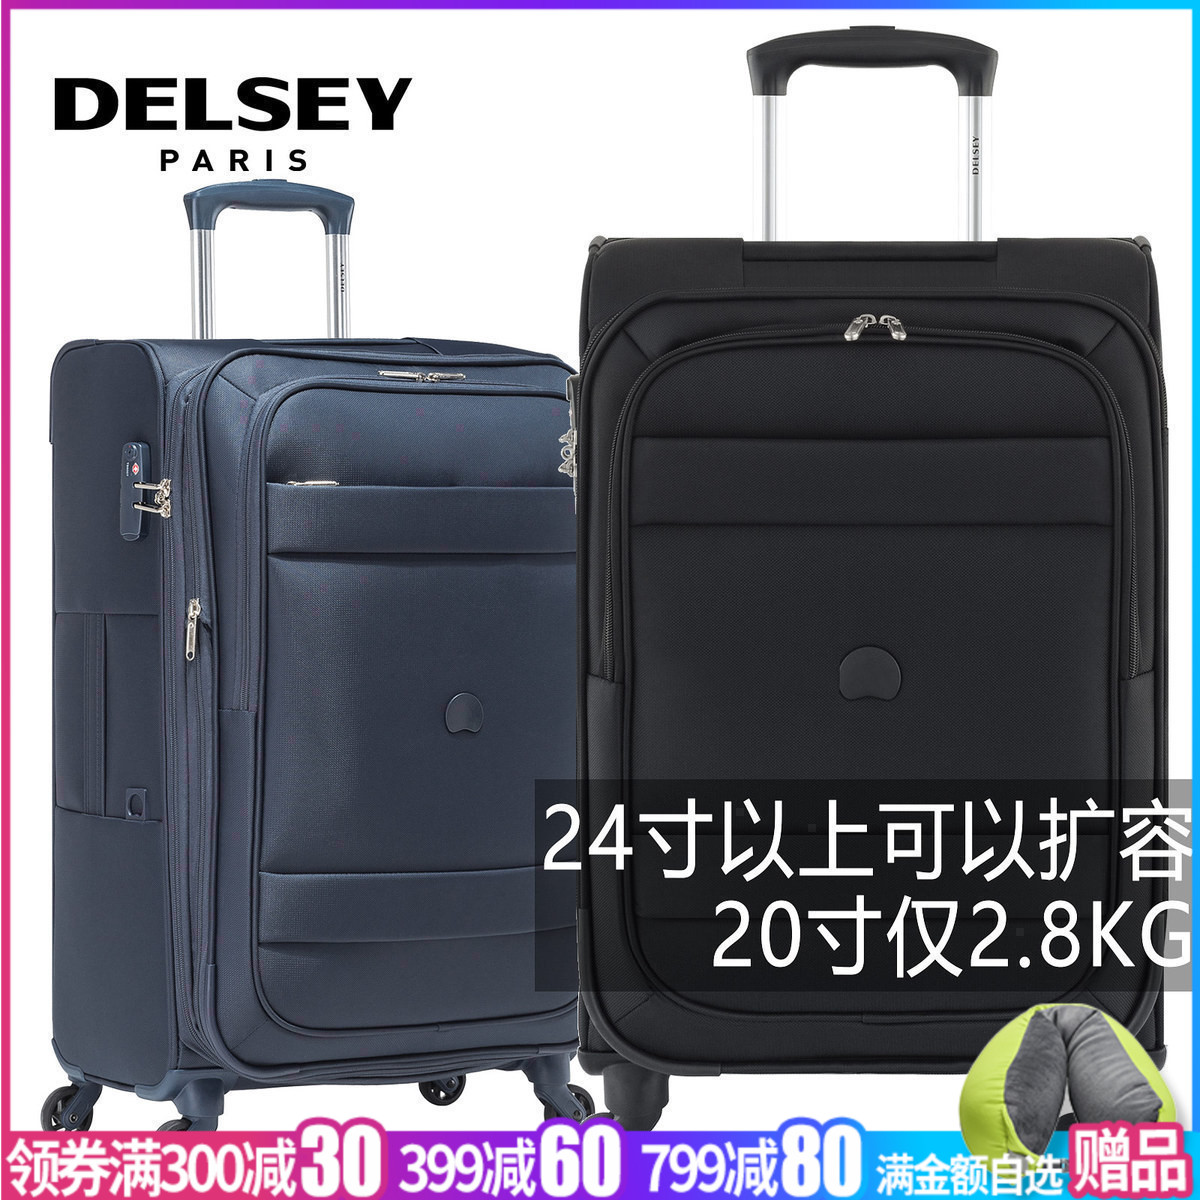 法国DELSEY大使牌拉杆箱旅行箱20寸登机箱包行李箱轻软箱3035